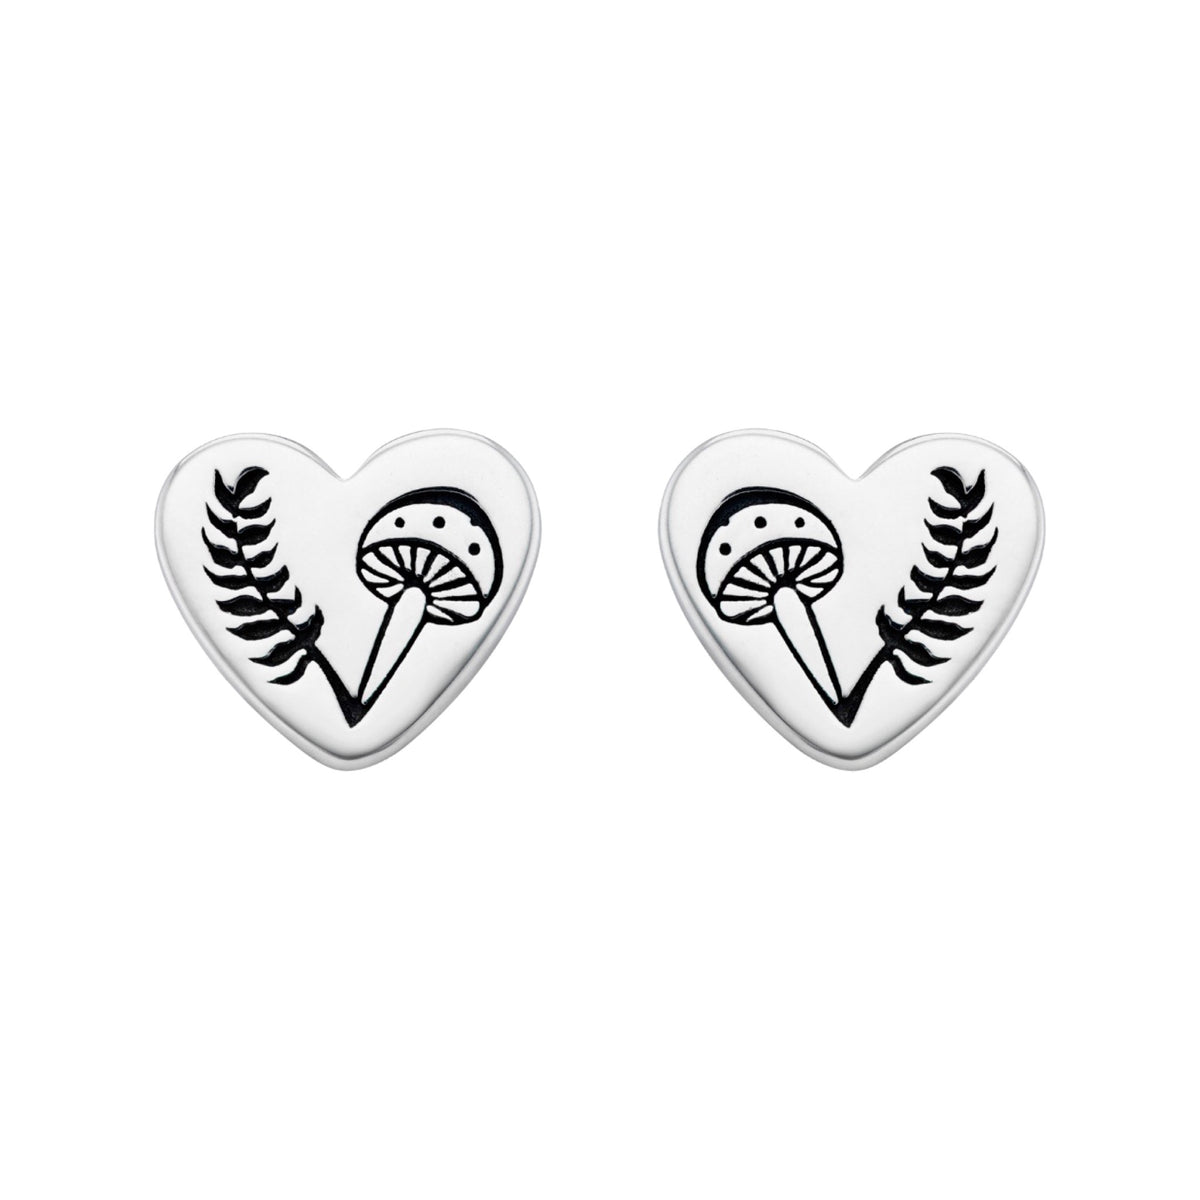 Heart Fern toadstool mushroon stud earring nature inspired alternative boho sterling silver jewellery. 